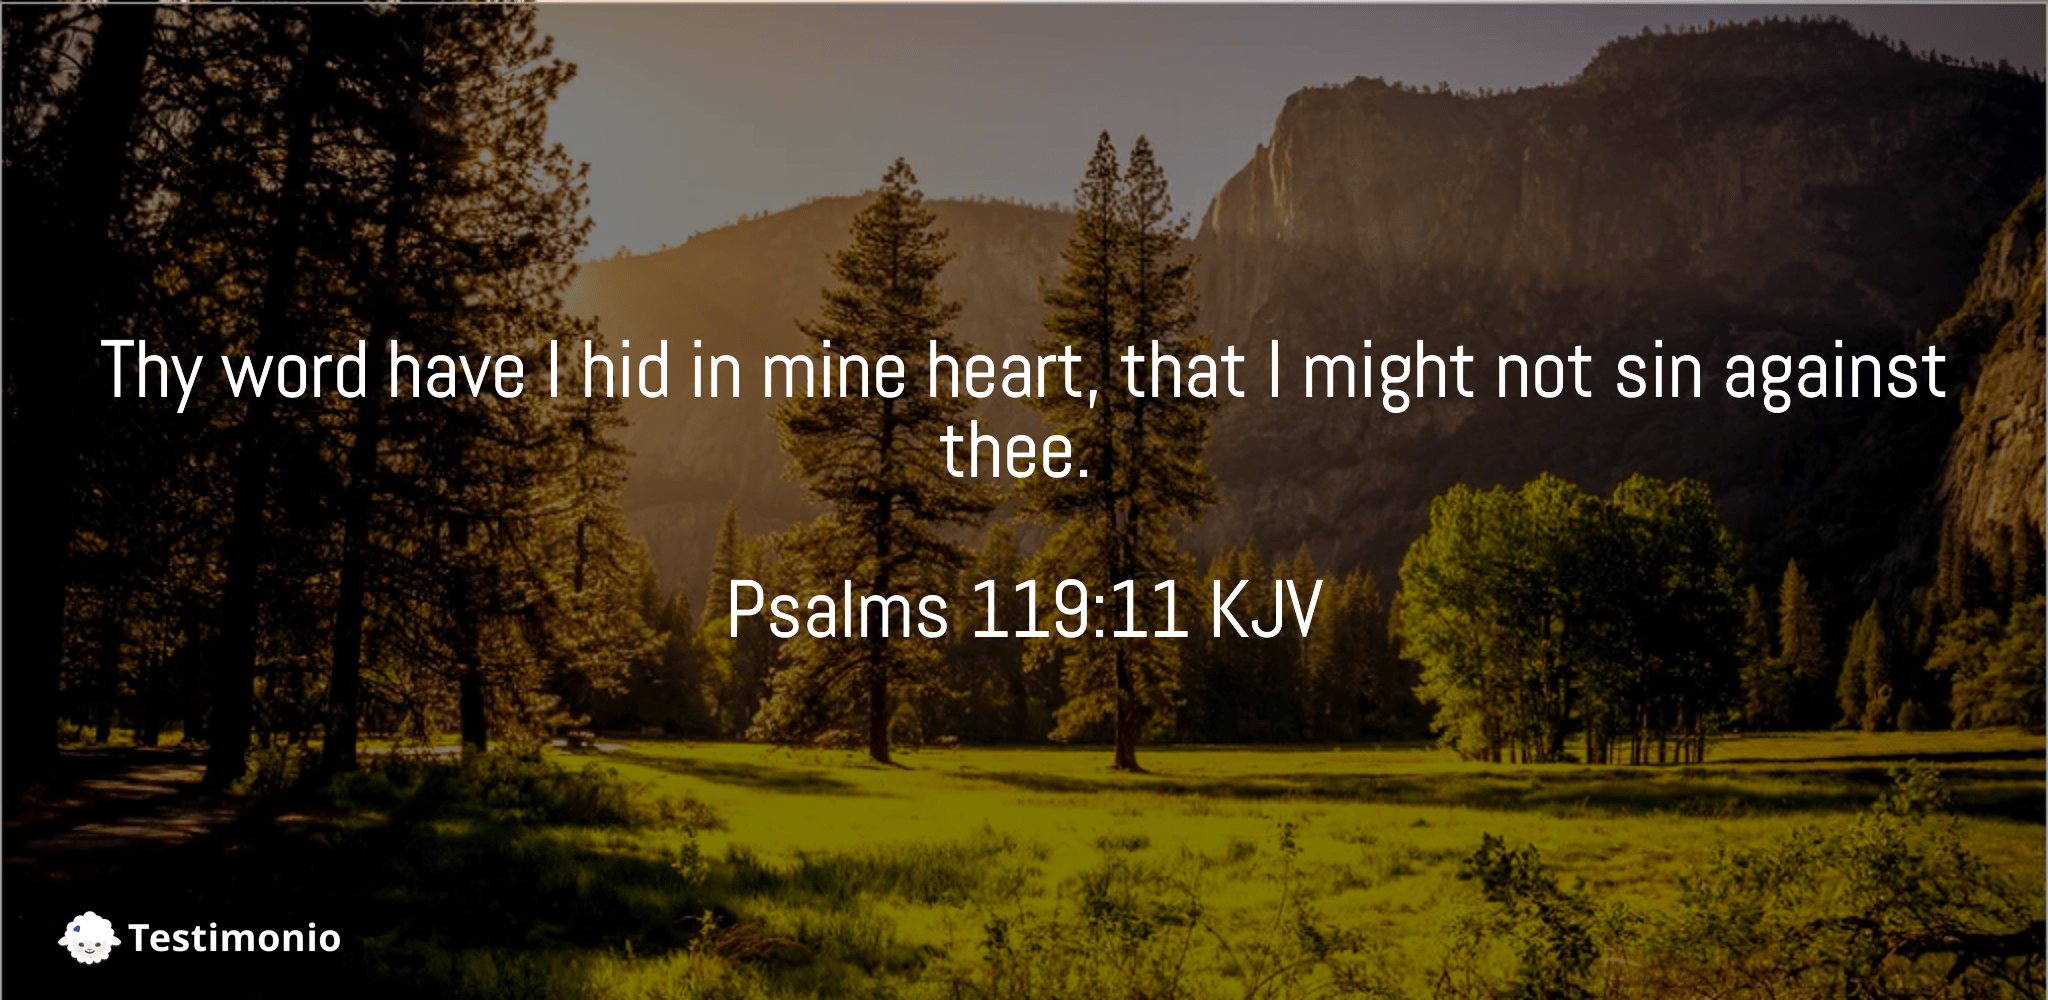 Psalms 119:11